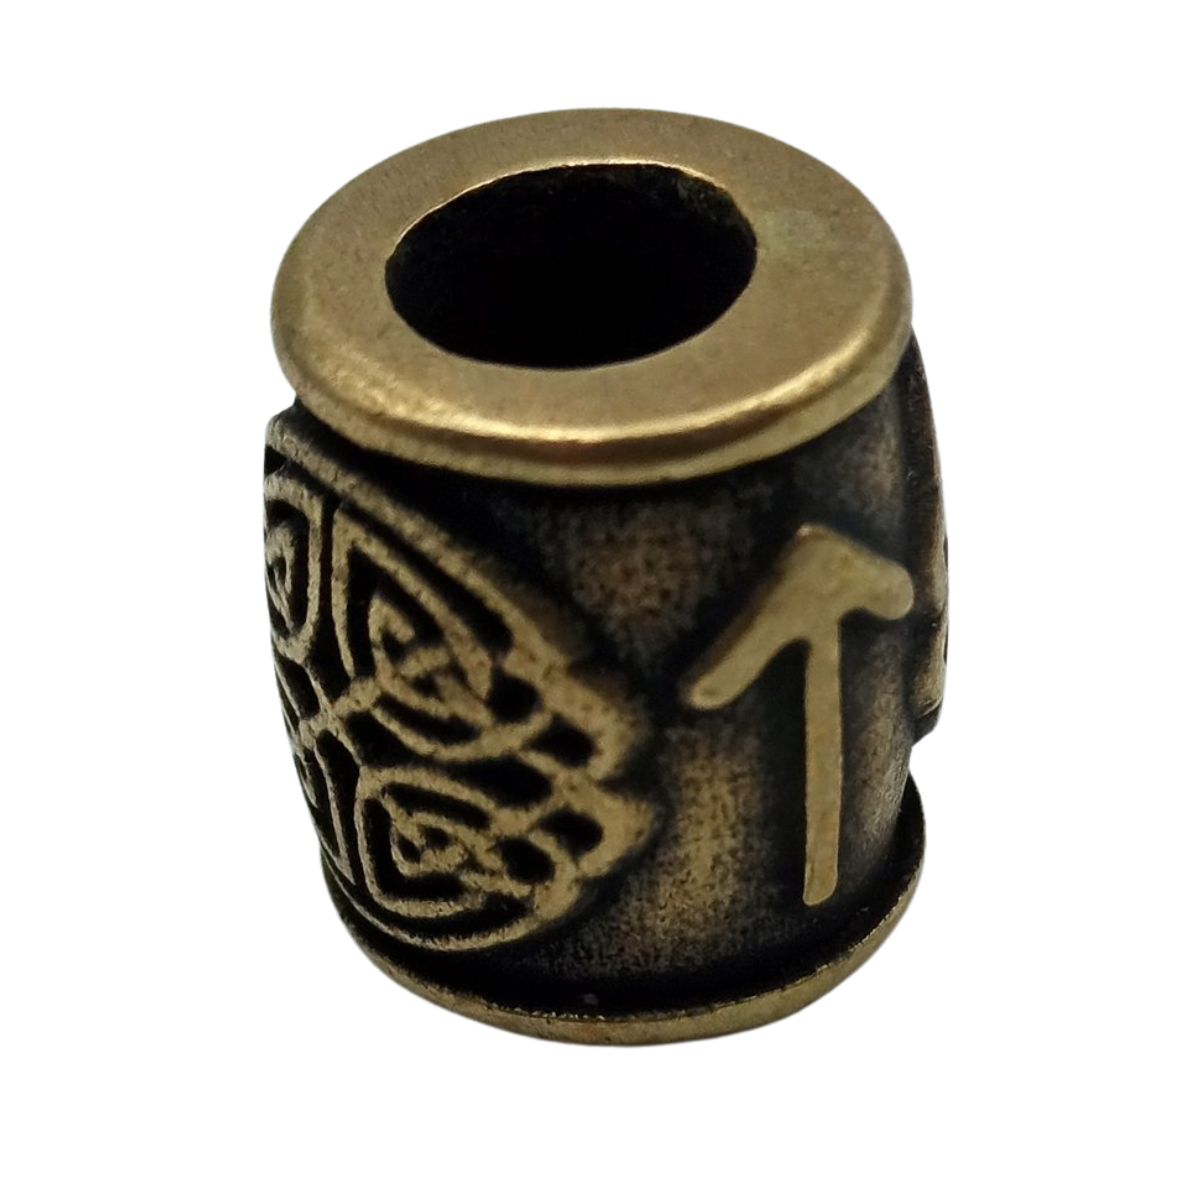 Tiwaz rune bronze bead